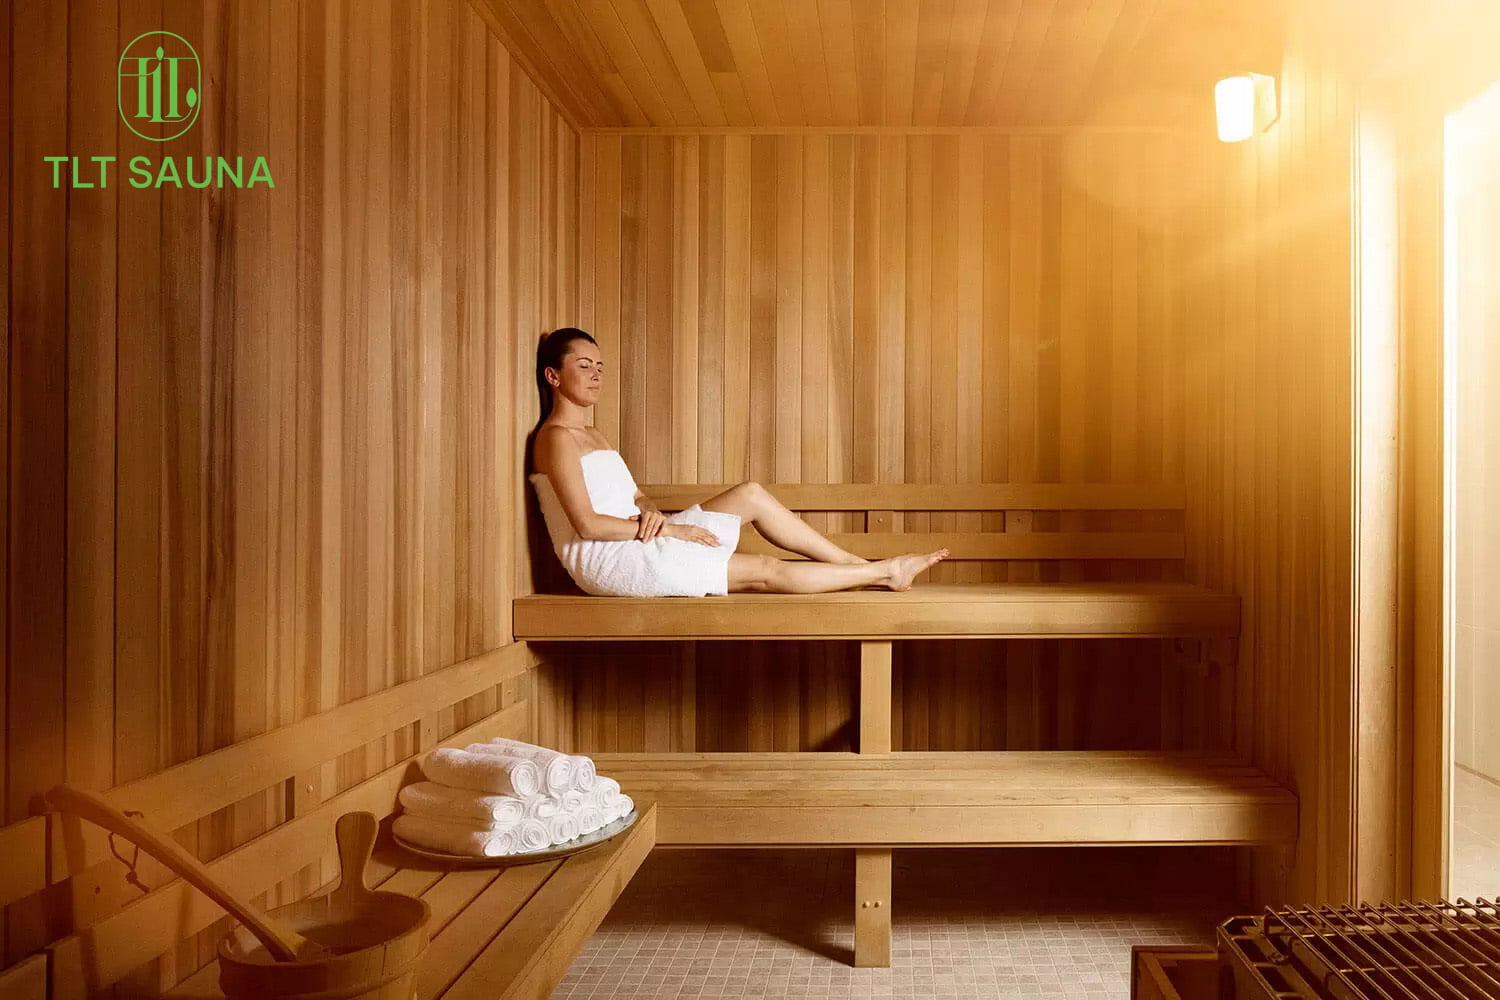 Phòng xông hơi TLT Sauna là một không gian yên tĩnh để thư giãn và phục hồi sức khỏe